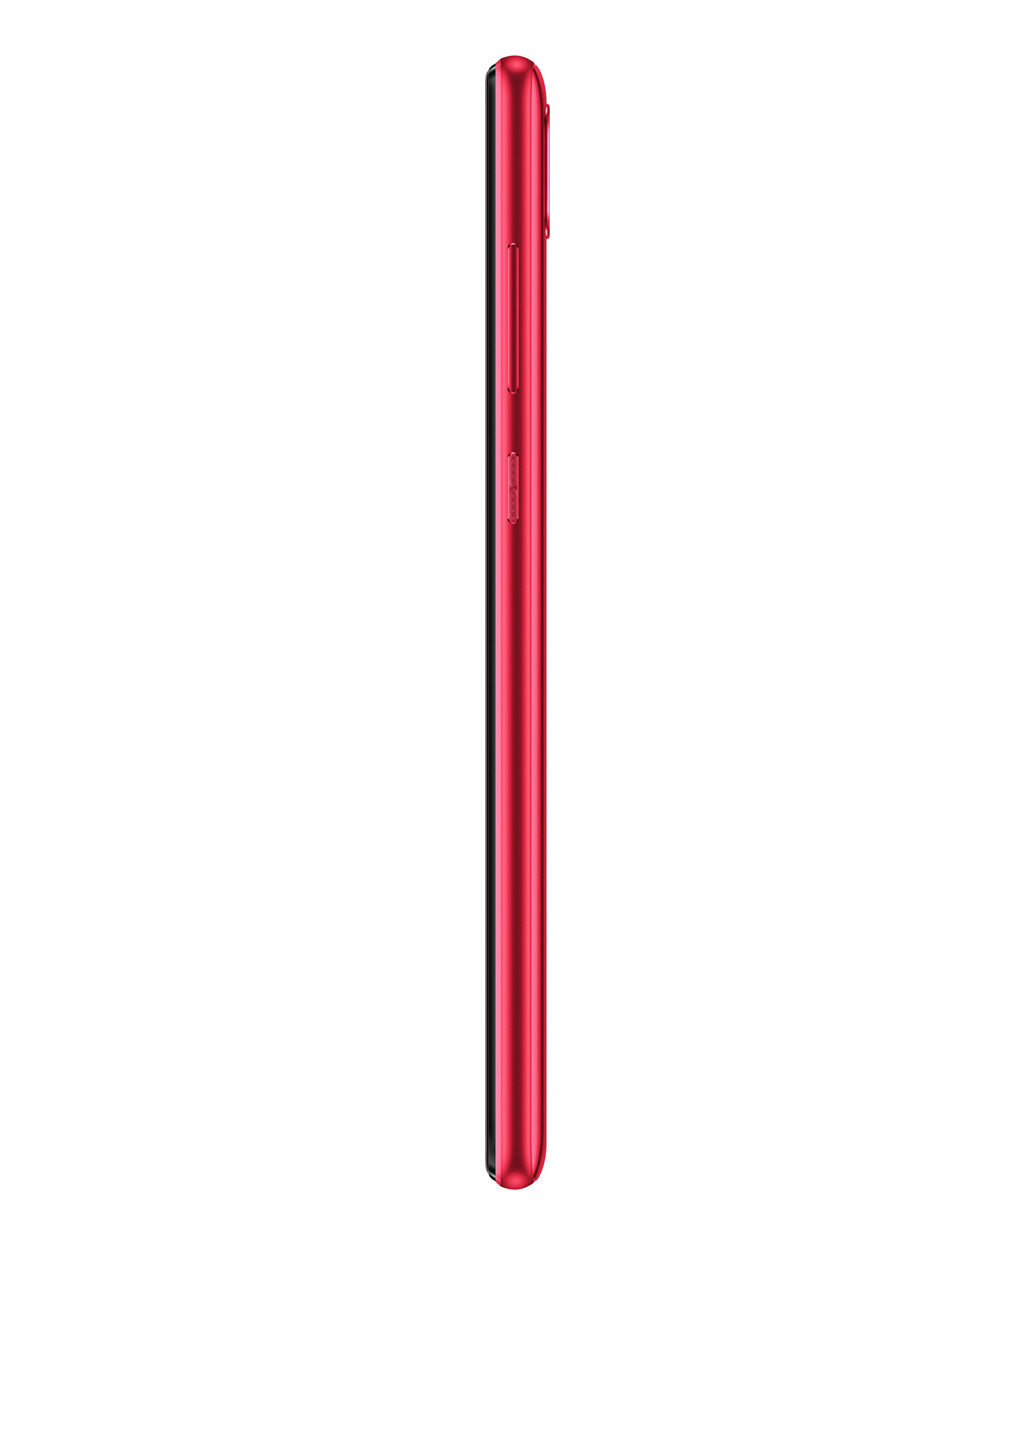 Смартфон Huawei Y7 2019 3/32GB Red (DUB-Lх1) красный